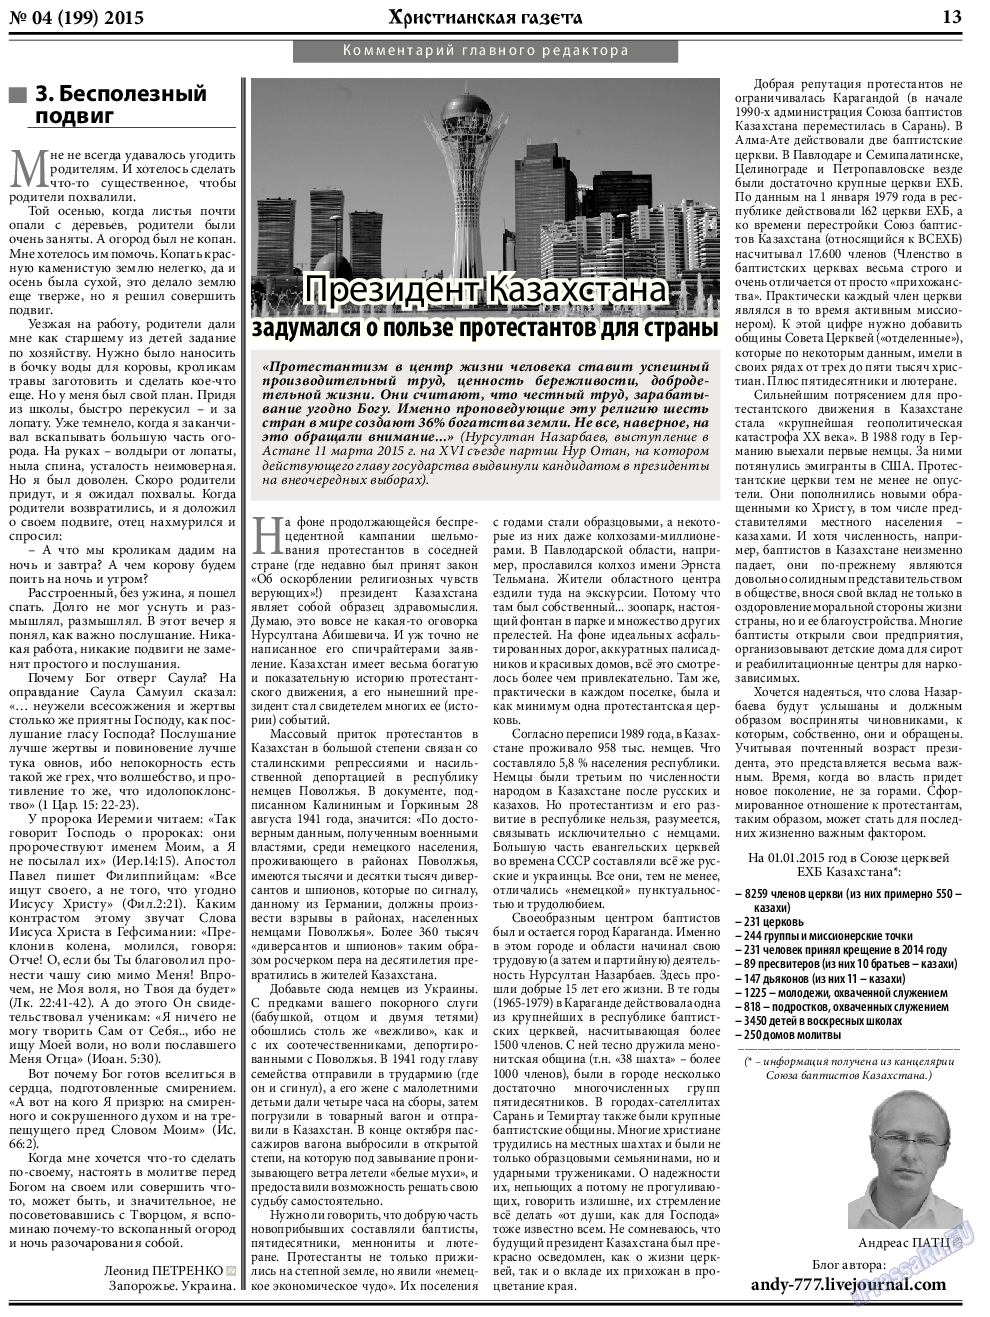 Христианская газета, газета. 2015 №4 стр.21